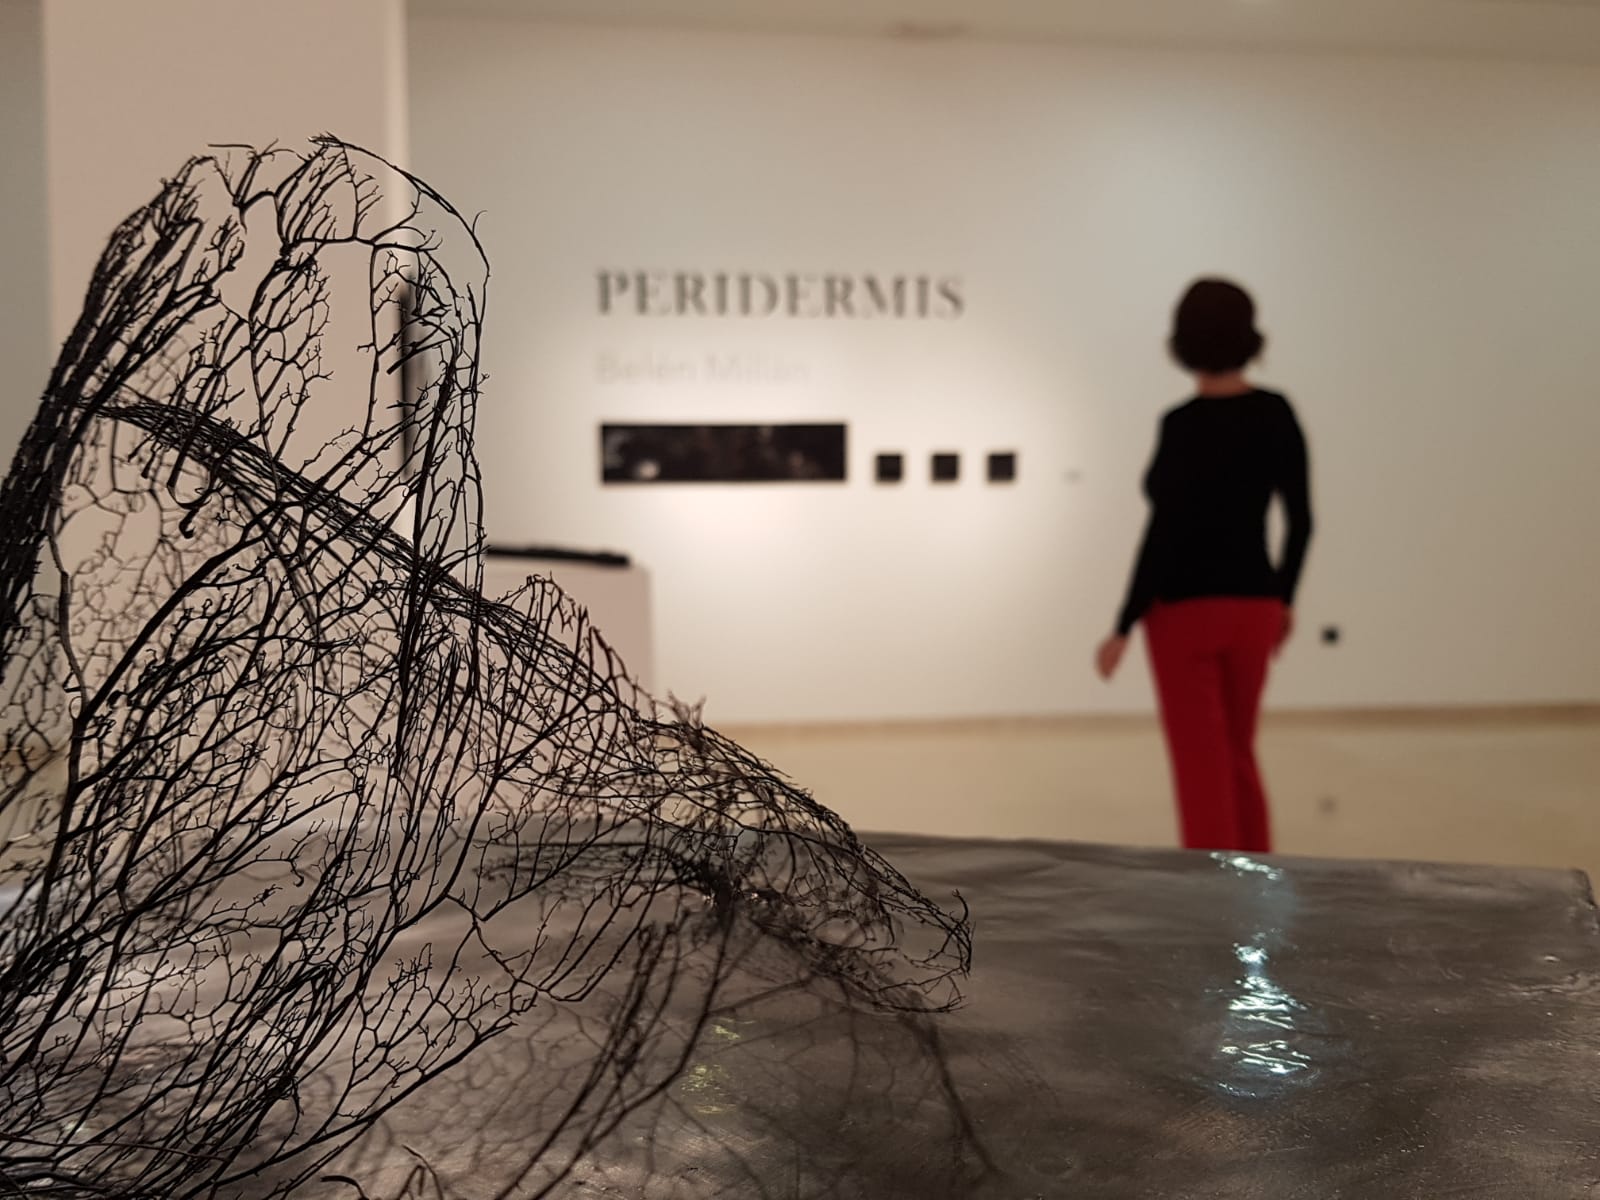 Peridermis Solo Show – Sala de exposiciones Alhaurin el Grande, Malaga, December 2018